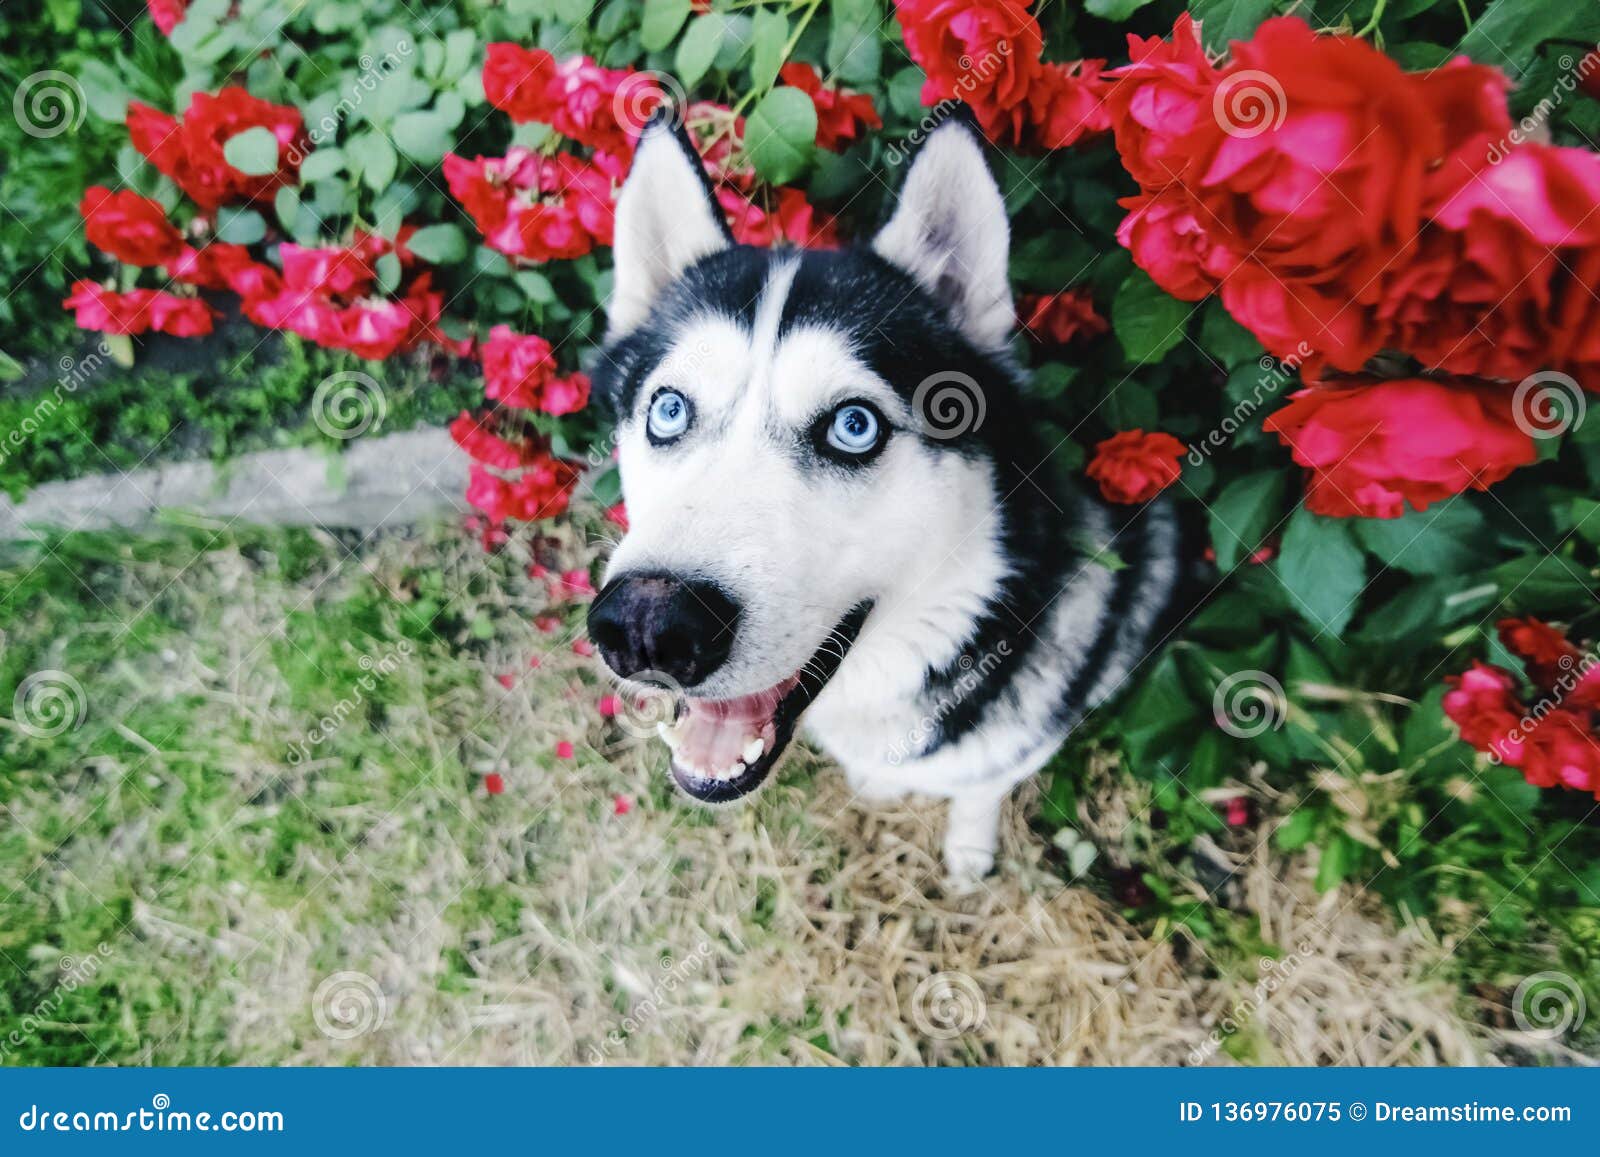 Look Full Of Love Pet Stock Image Image Of Siberian